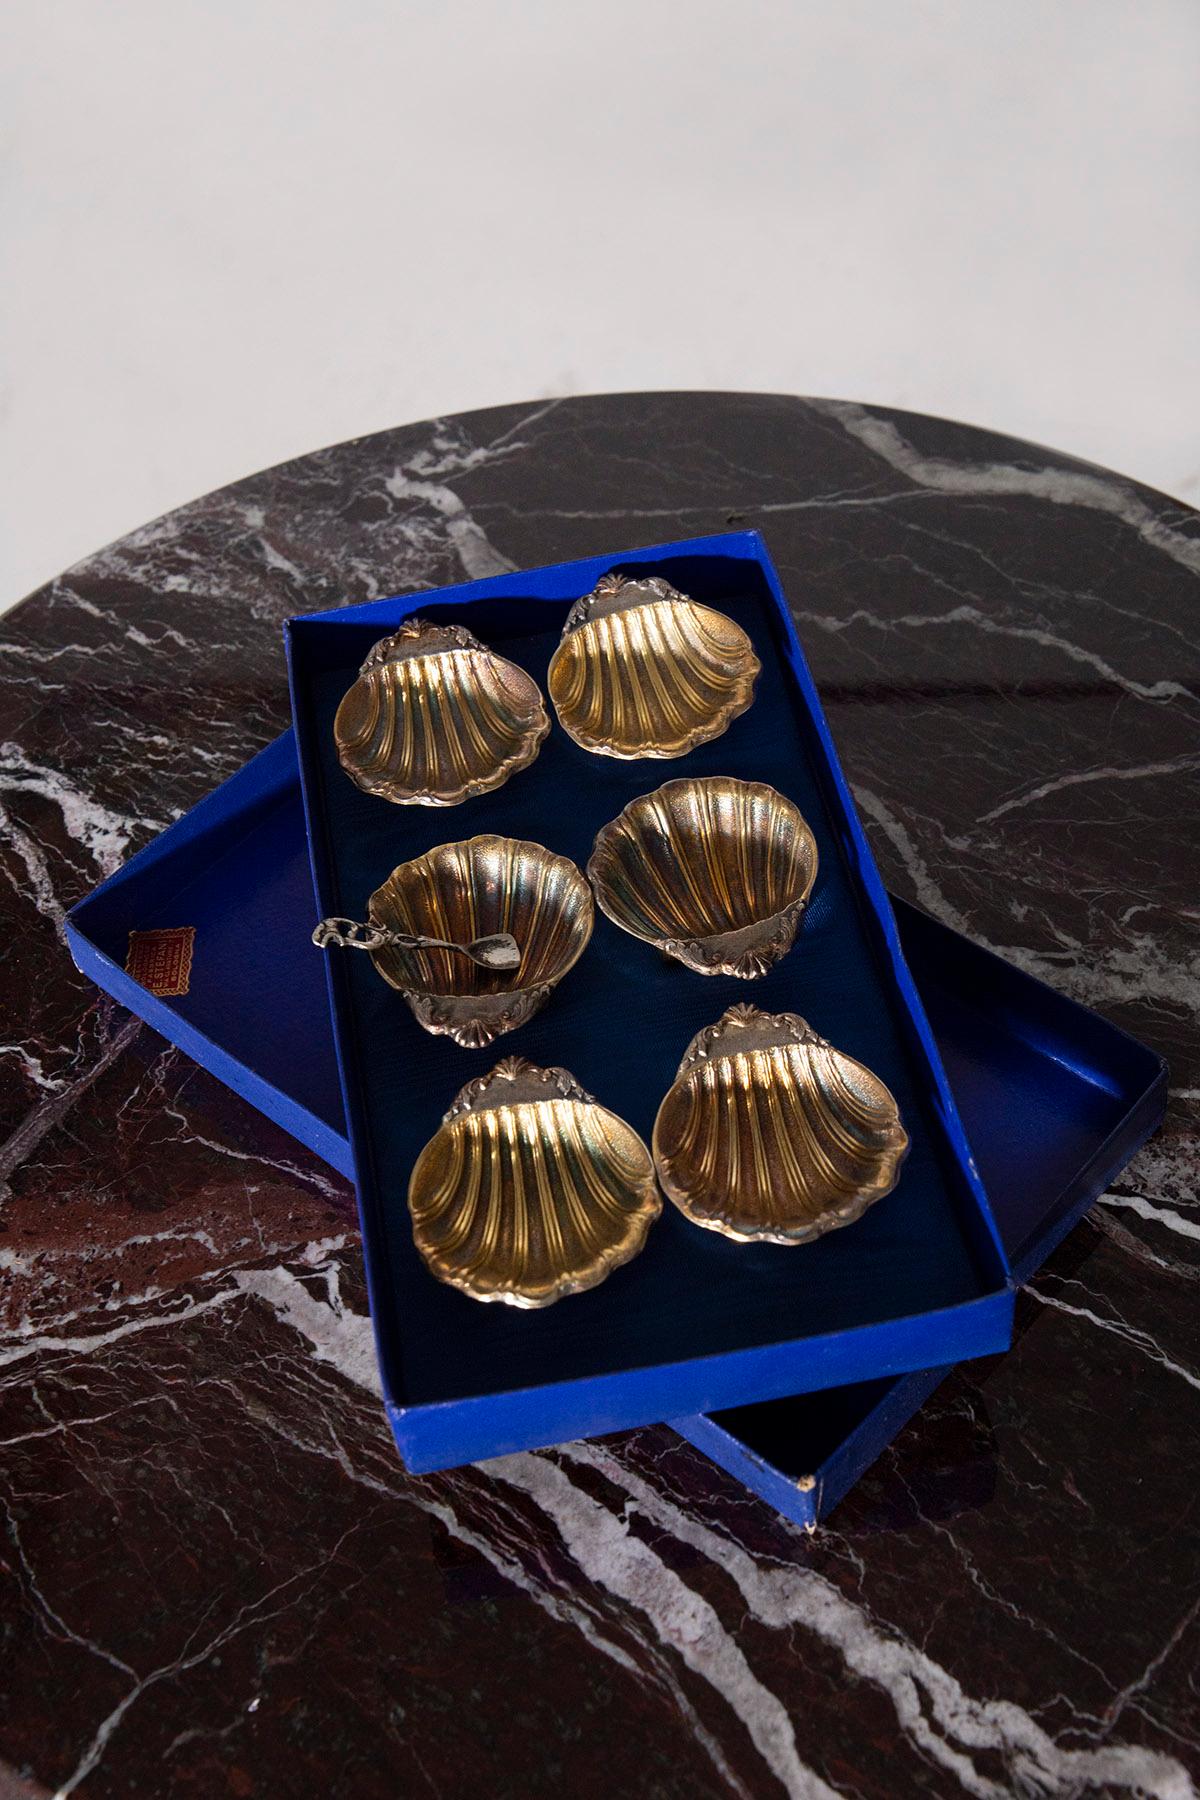 Un ensemble extraordinaire de couverts à caviar en argent plaqué des années 1970, portant l'emblème d'E. Stefani, une entreprise italienne emblématique qui a marqué l'histoire de l'orfèvrerie. Cet ensemble est un témoignage vivant de l'habileté et